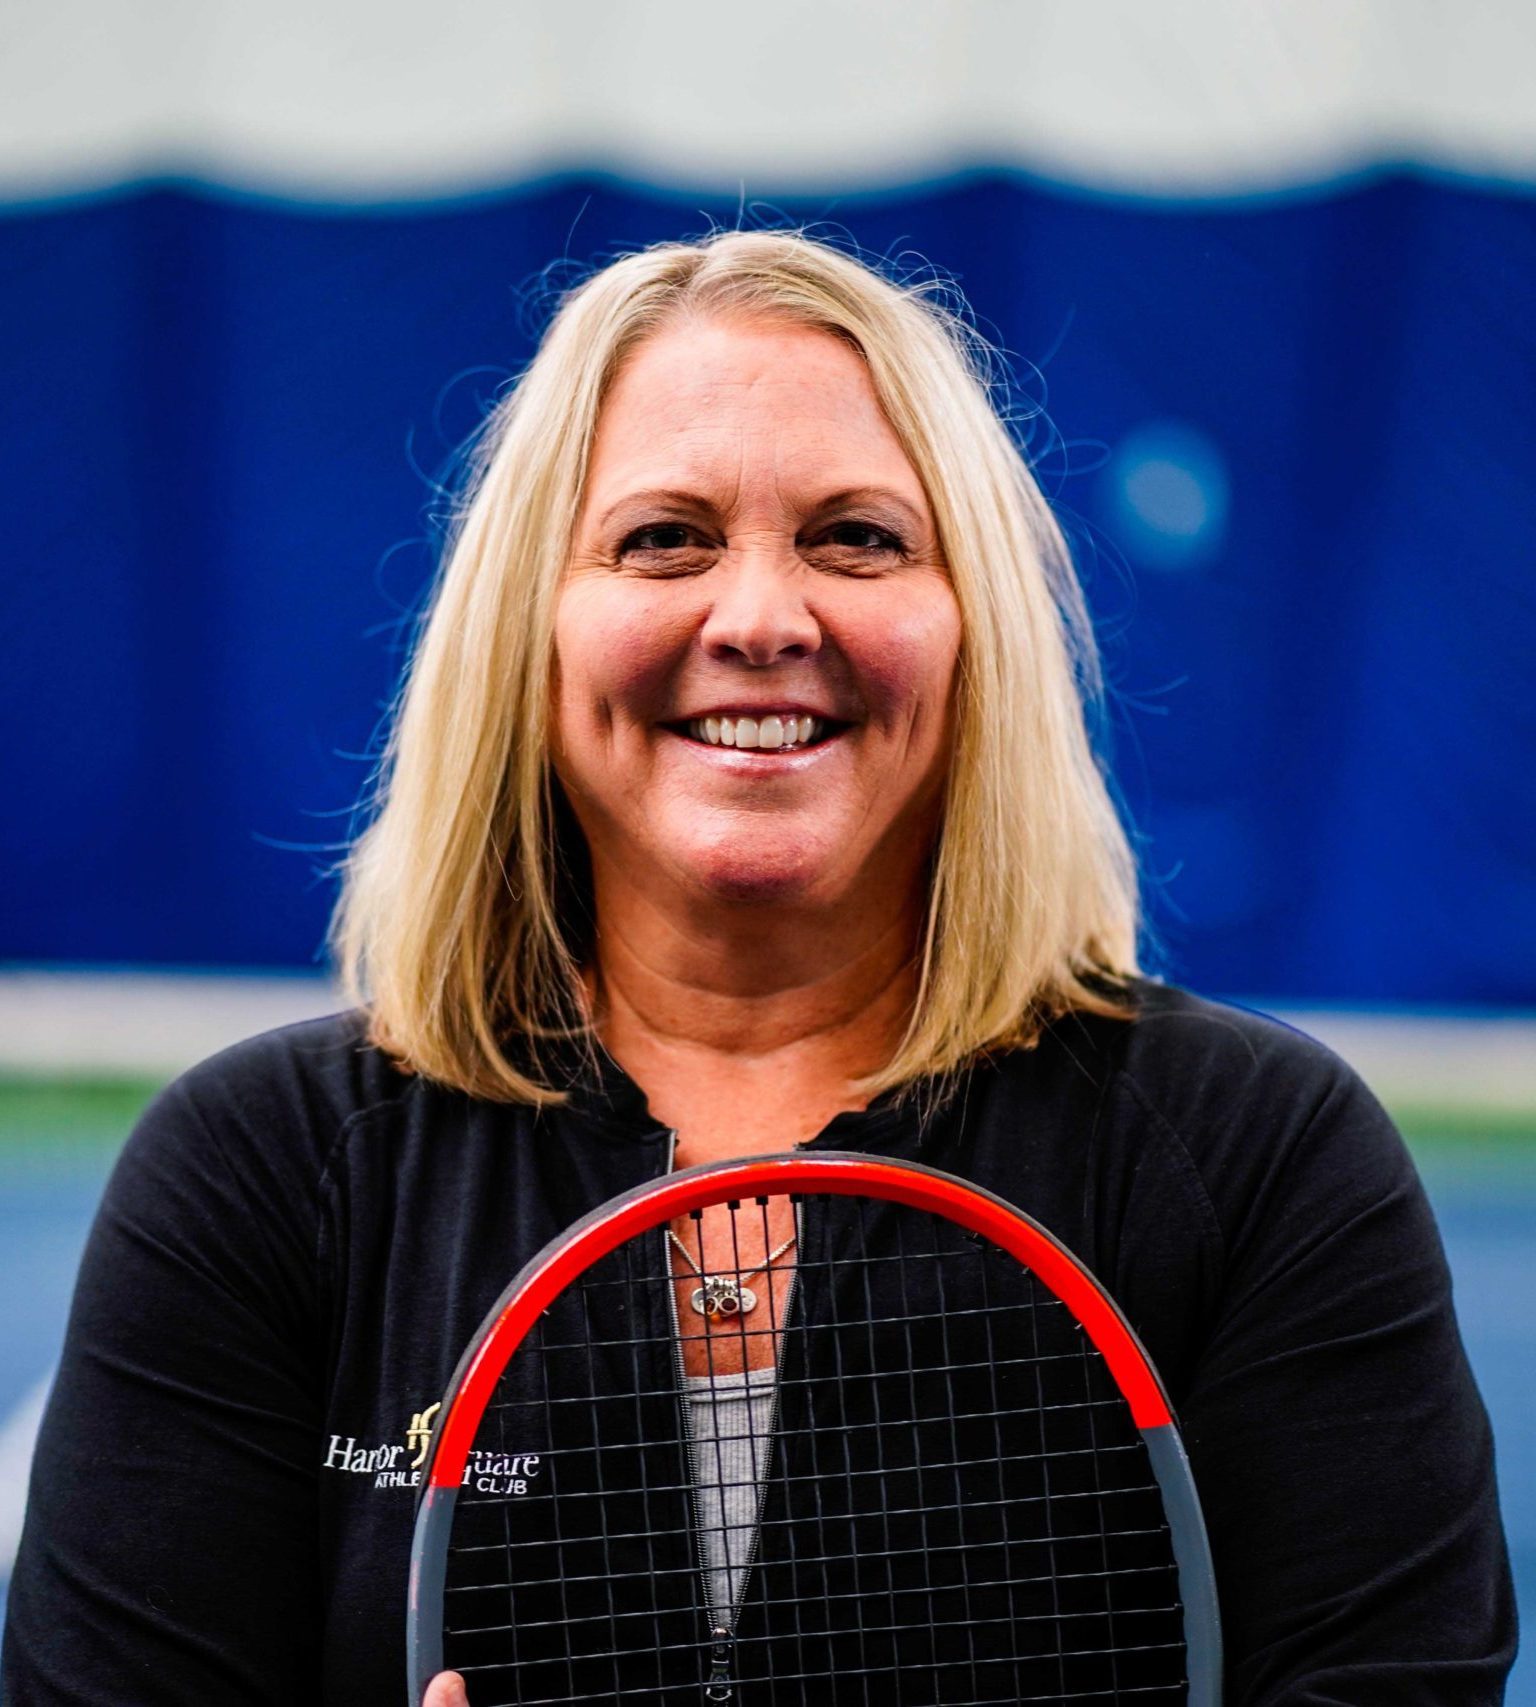 Ann Petschl Tennis